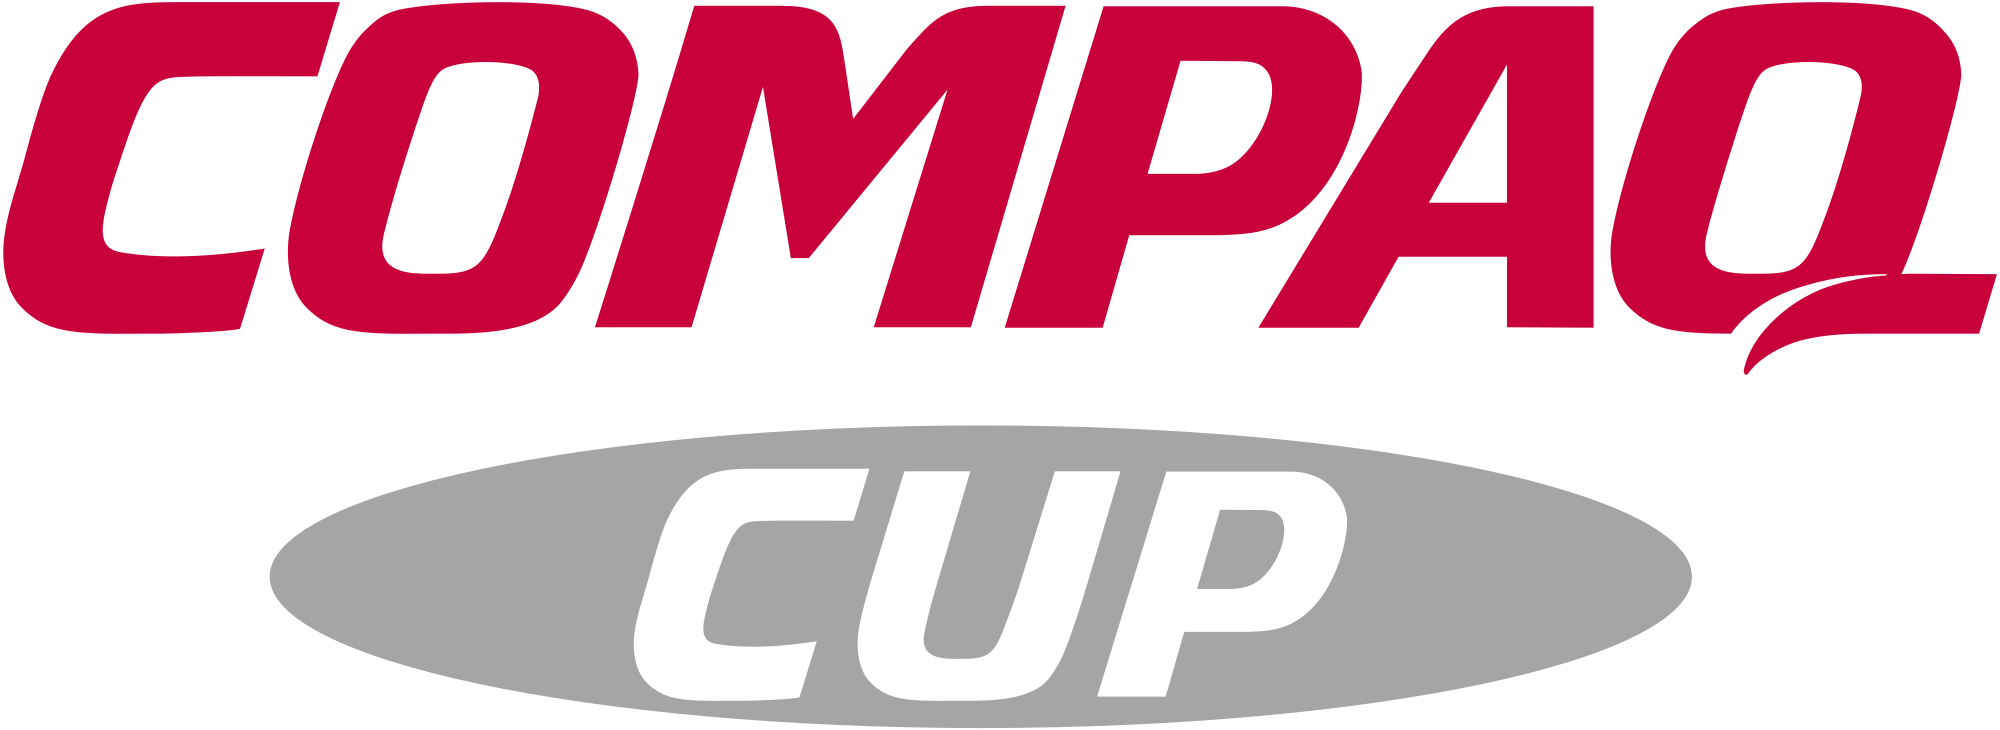 Compaq Logo - Compaq Cup logo 1999.svg